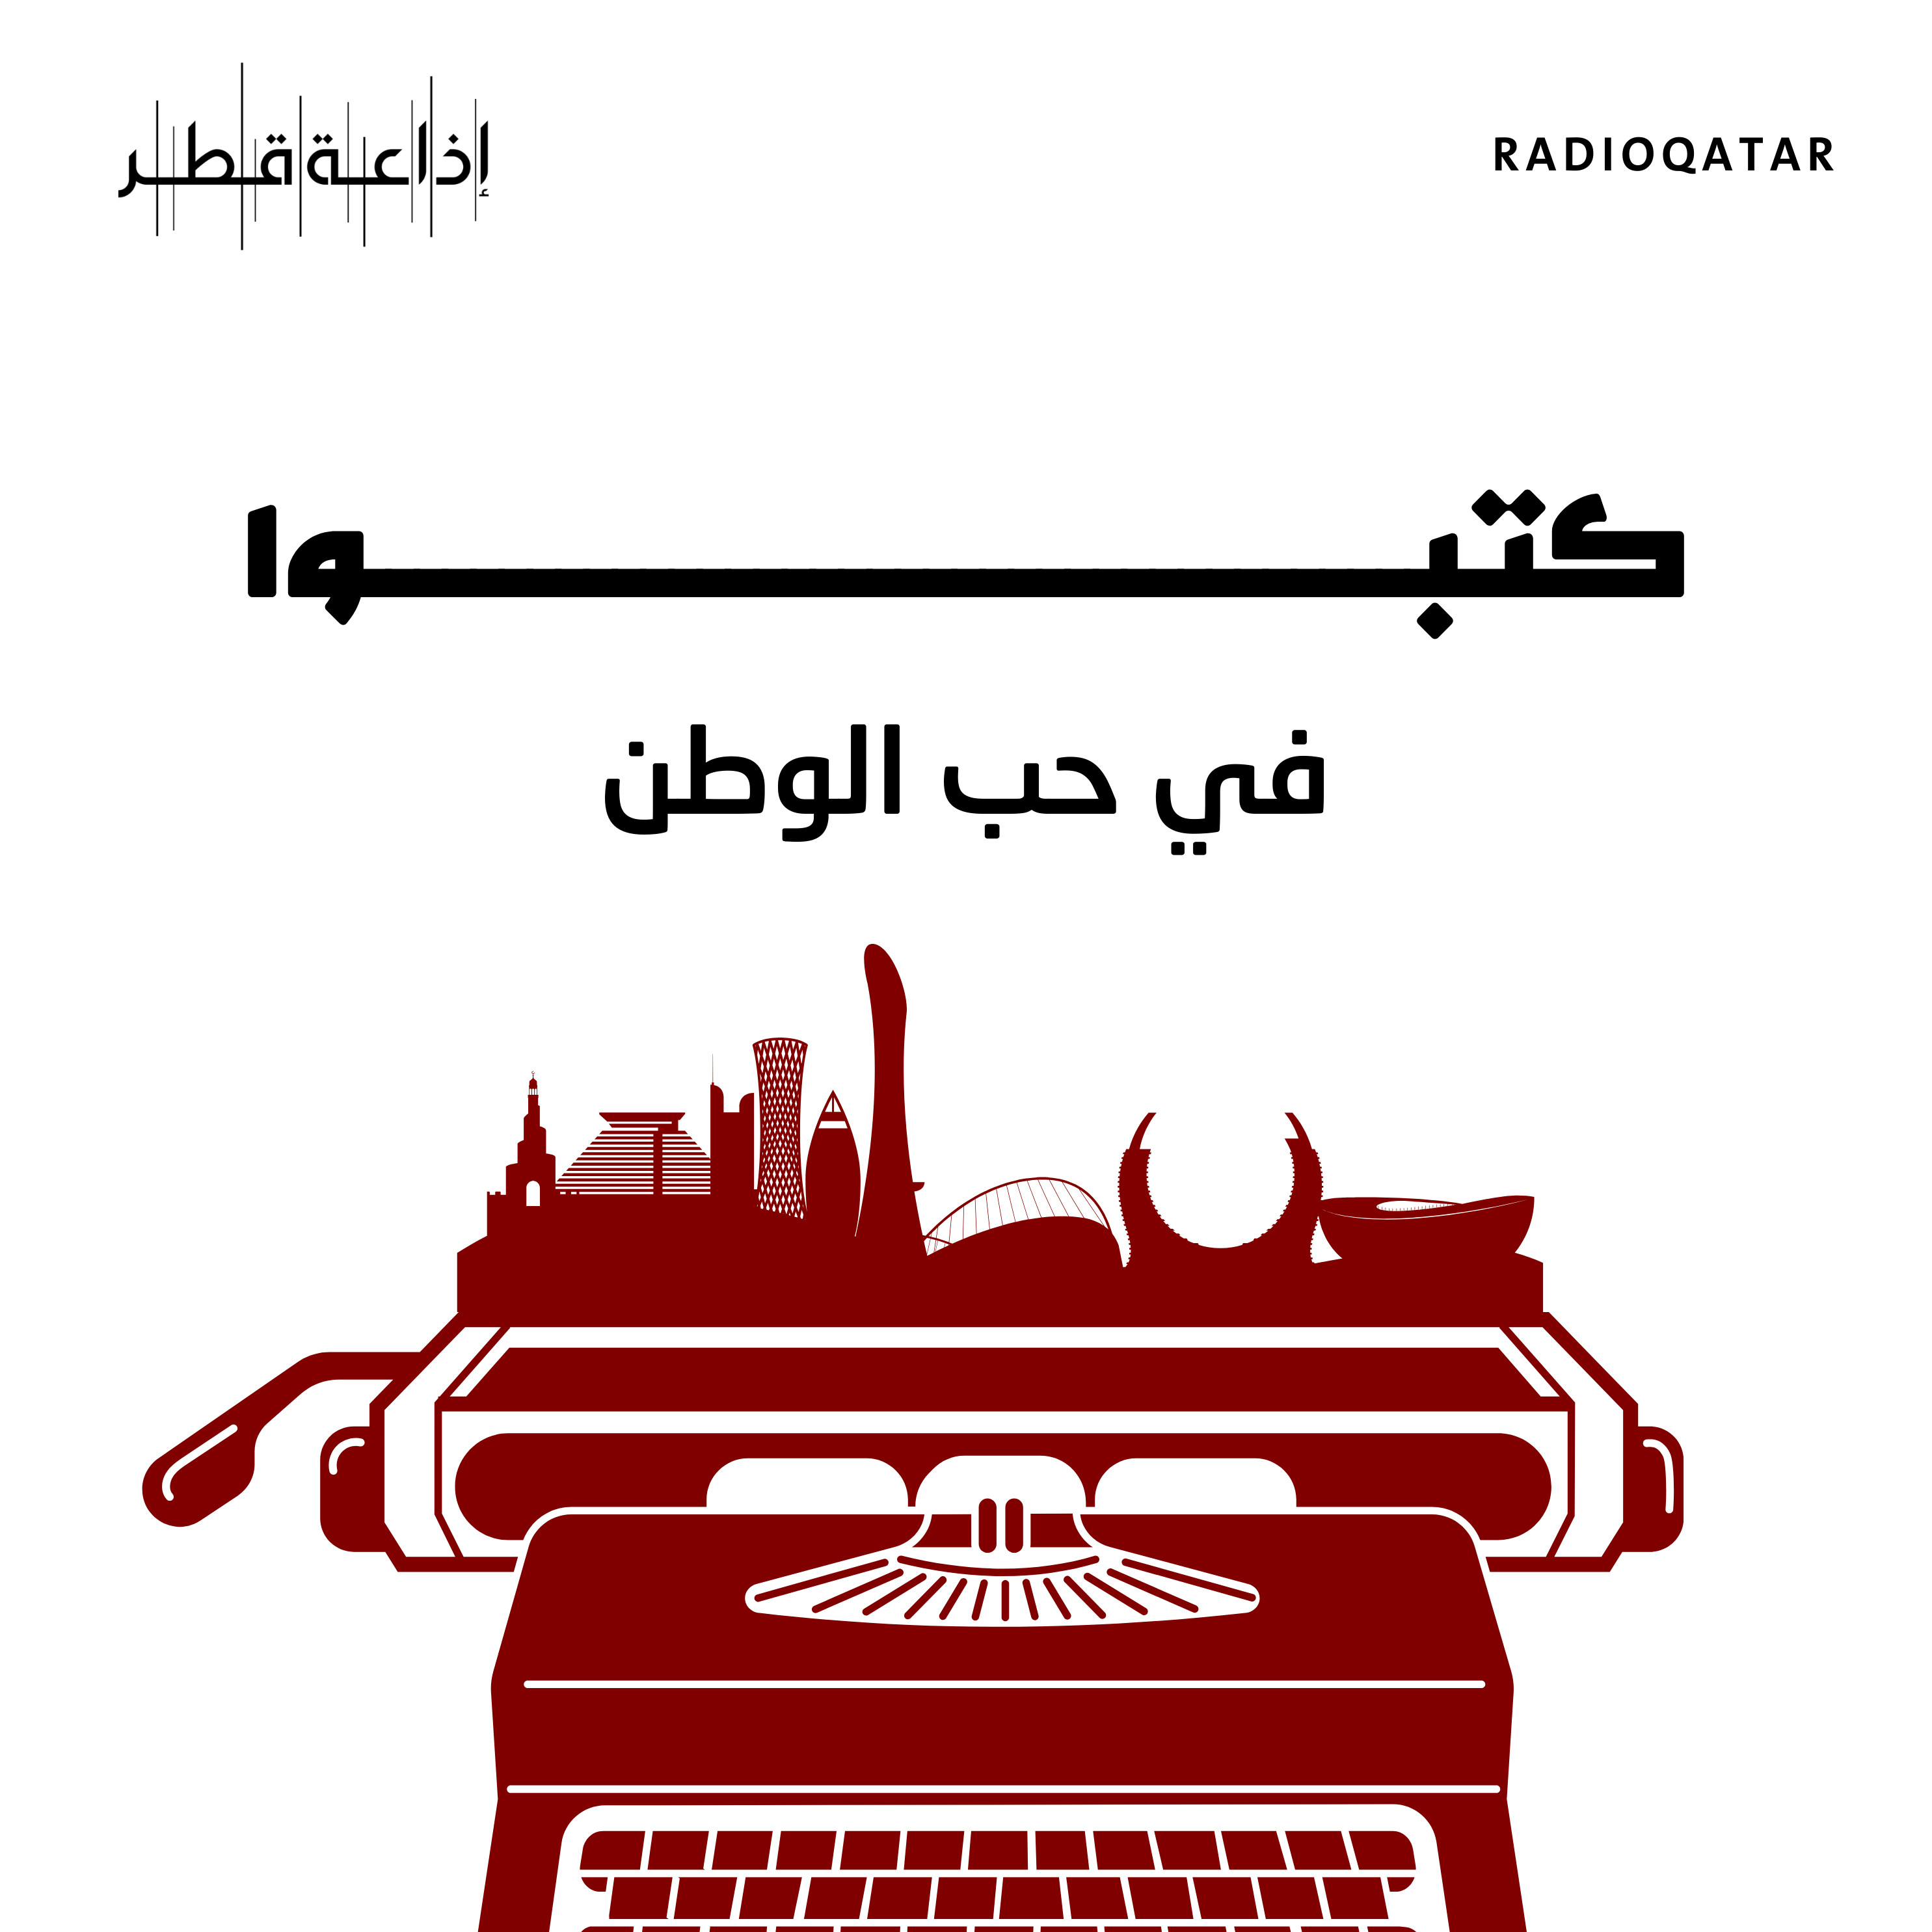 الكاتب إبراهيم هاشم السادة